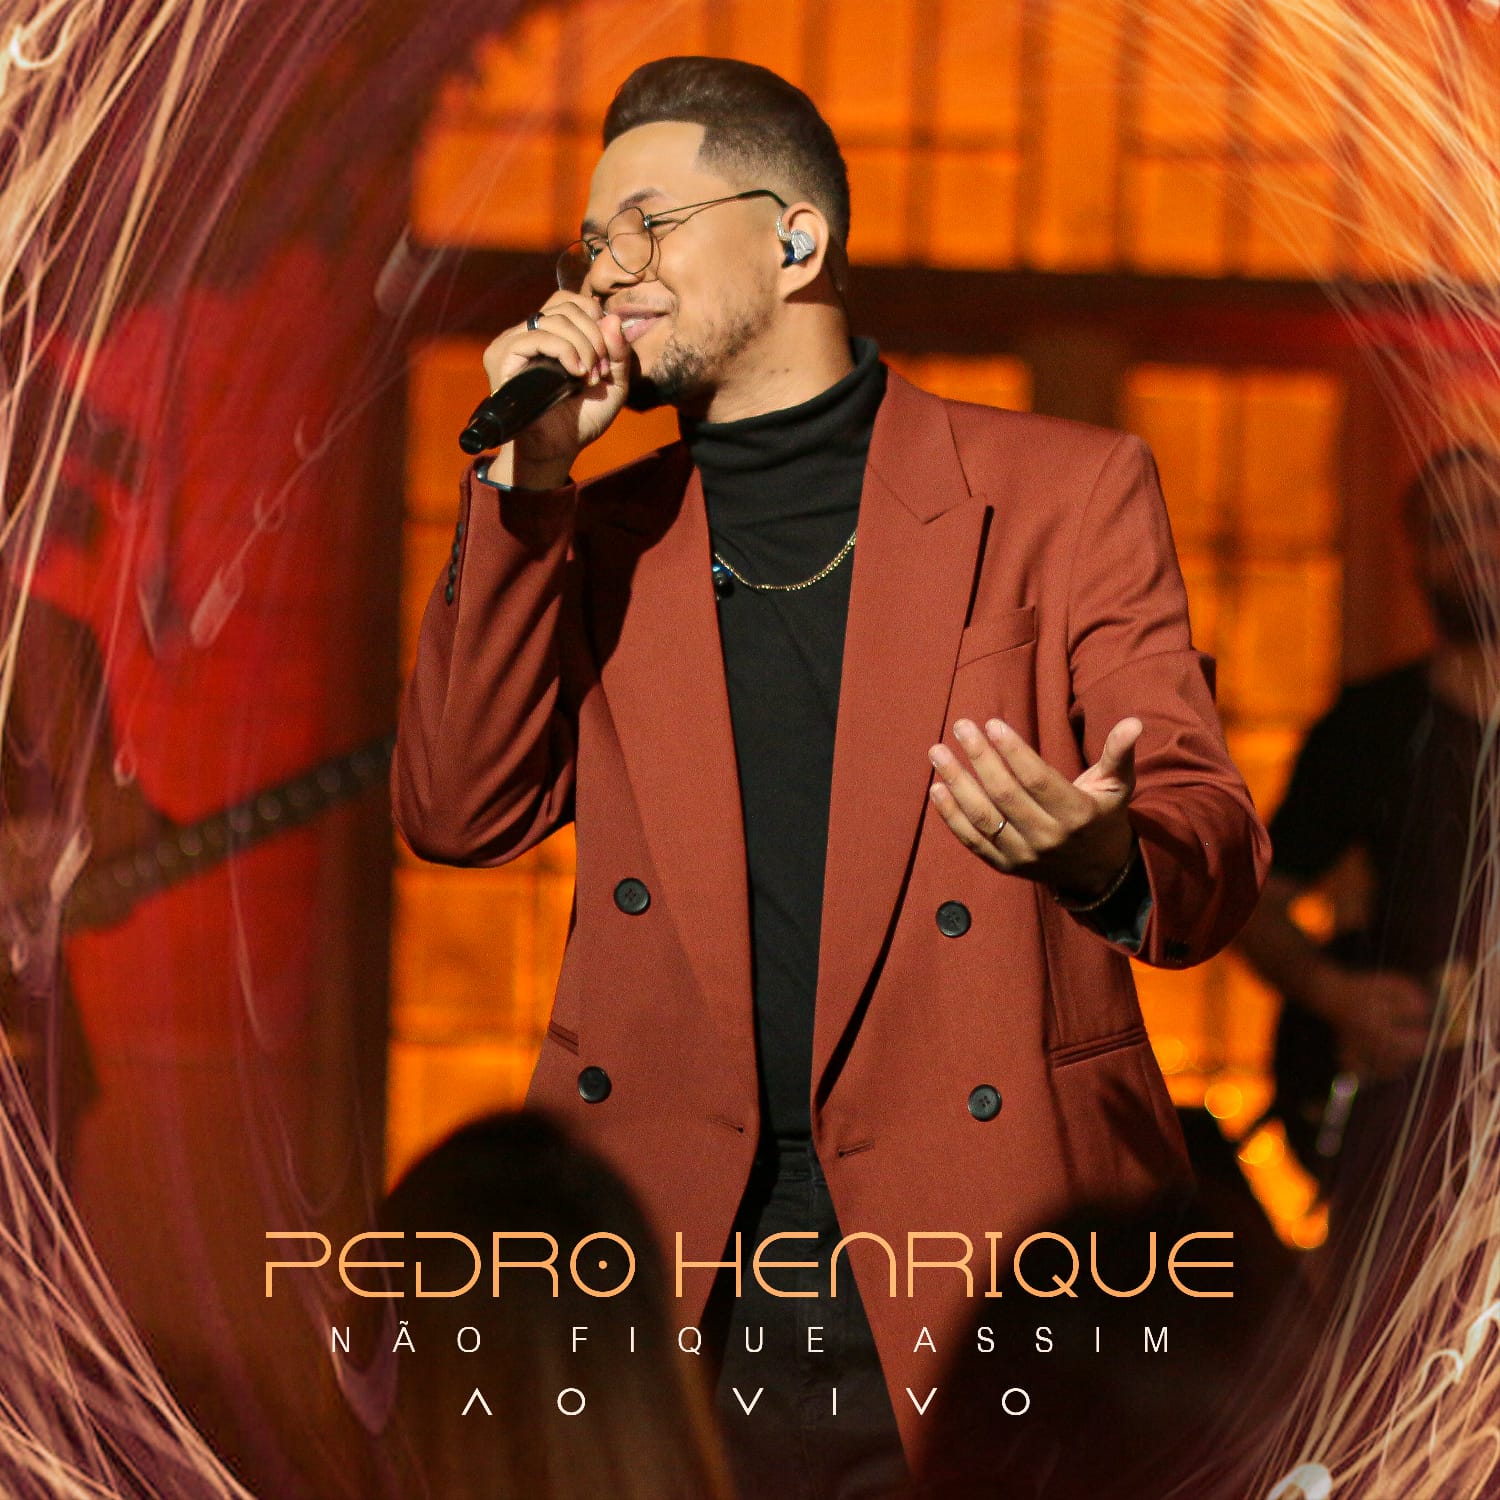 Pedro Henrique lança “Não fique assim”, uma canção atemporal e encorajadora